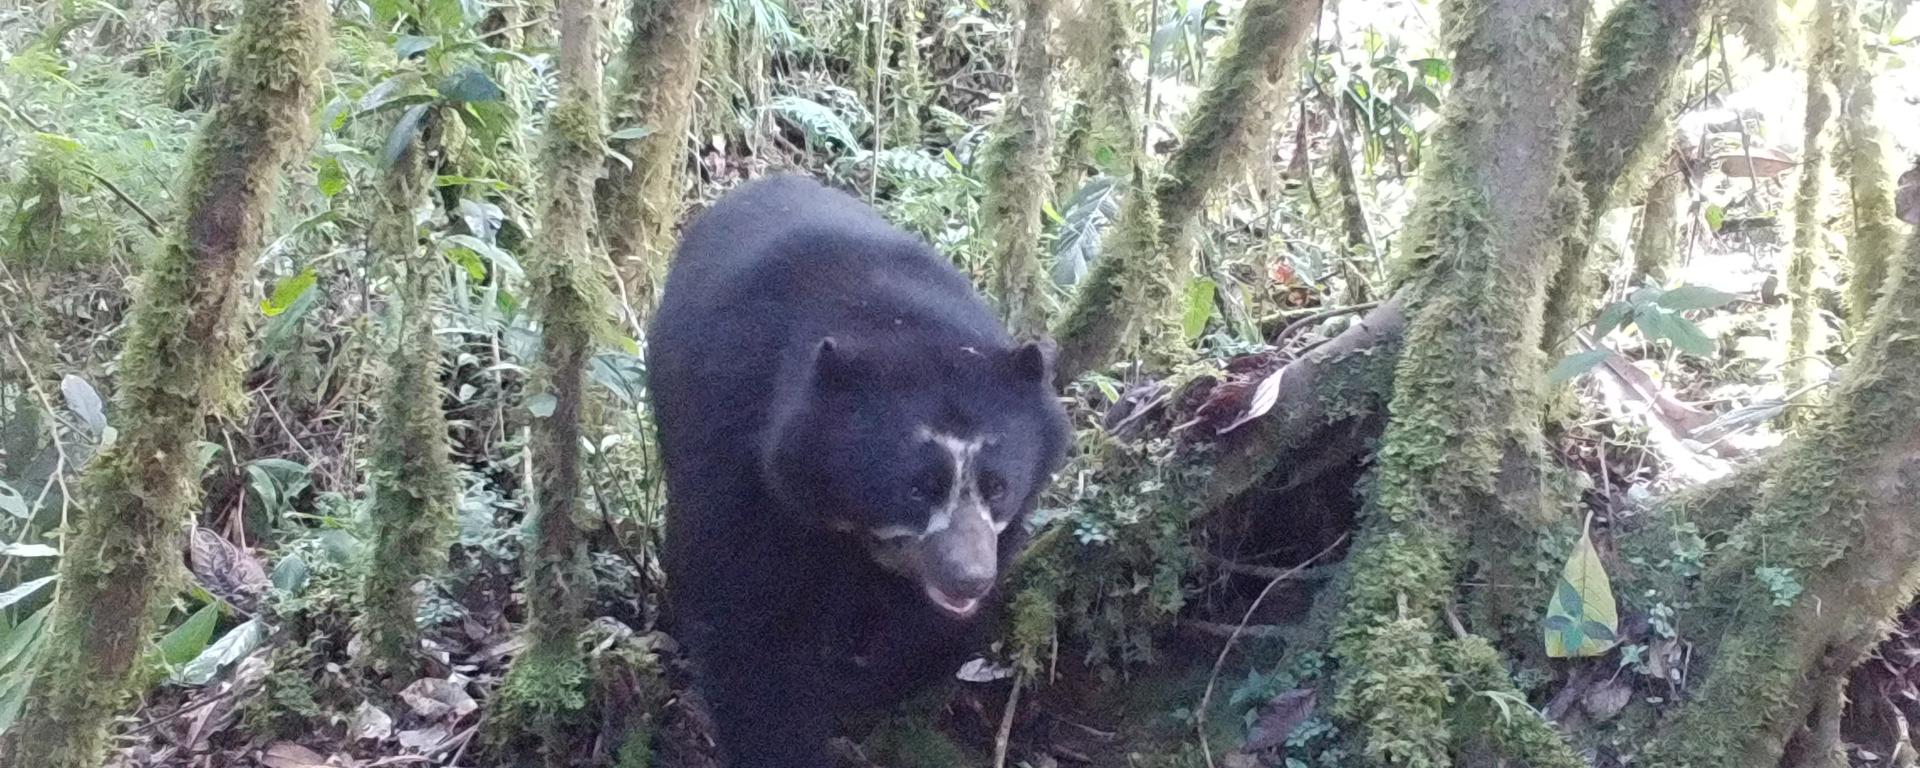 Oxapampa: el sistema de cámaras trampa que ayudan a proteger a los osos de anteojos, una especie en extinción 